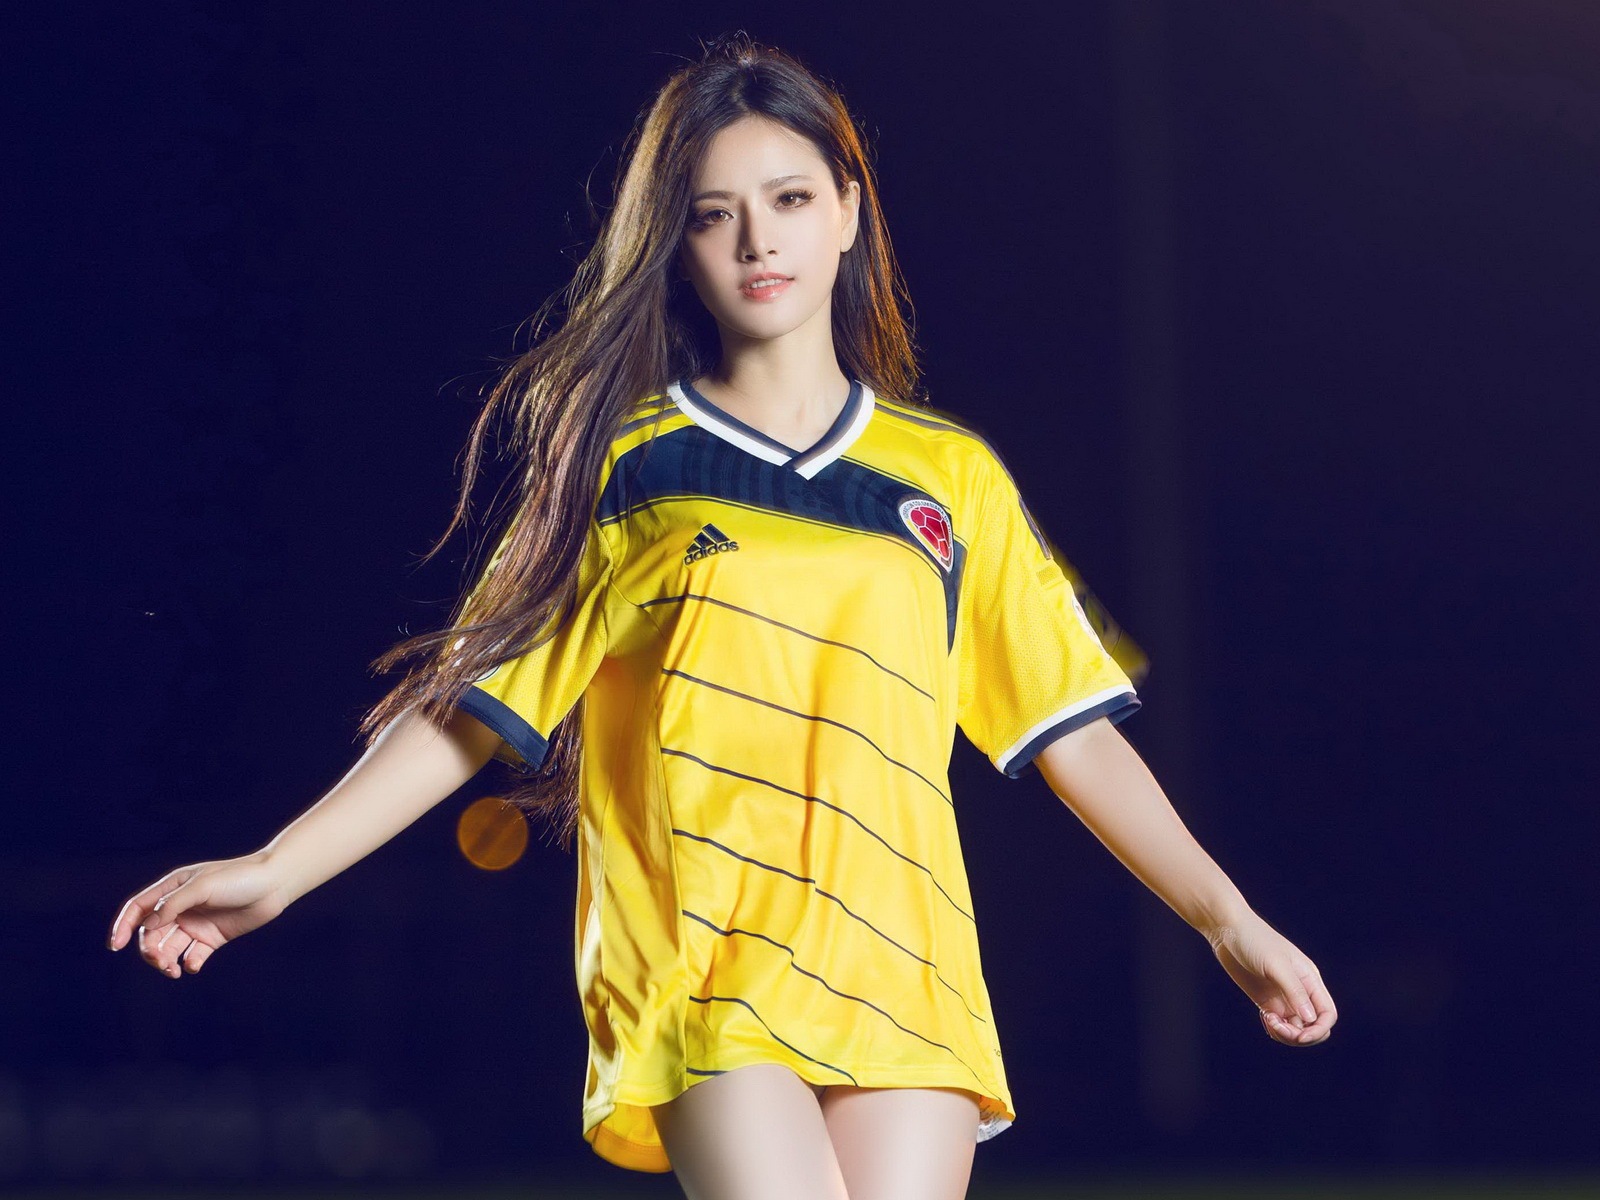 32 camisetas de la Copa del Mundo de fútbol, bebé wallpapers hermosas chicas HD #29 - 1600x1200